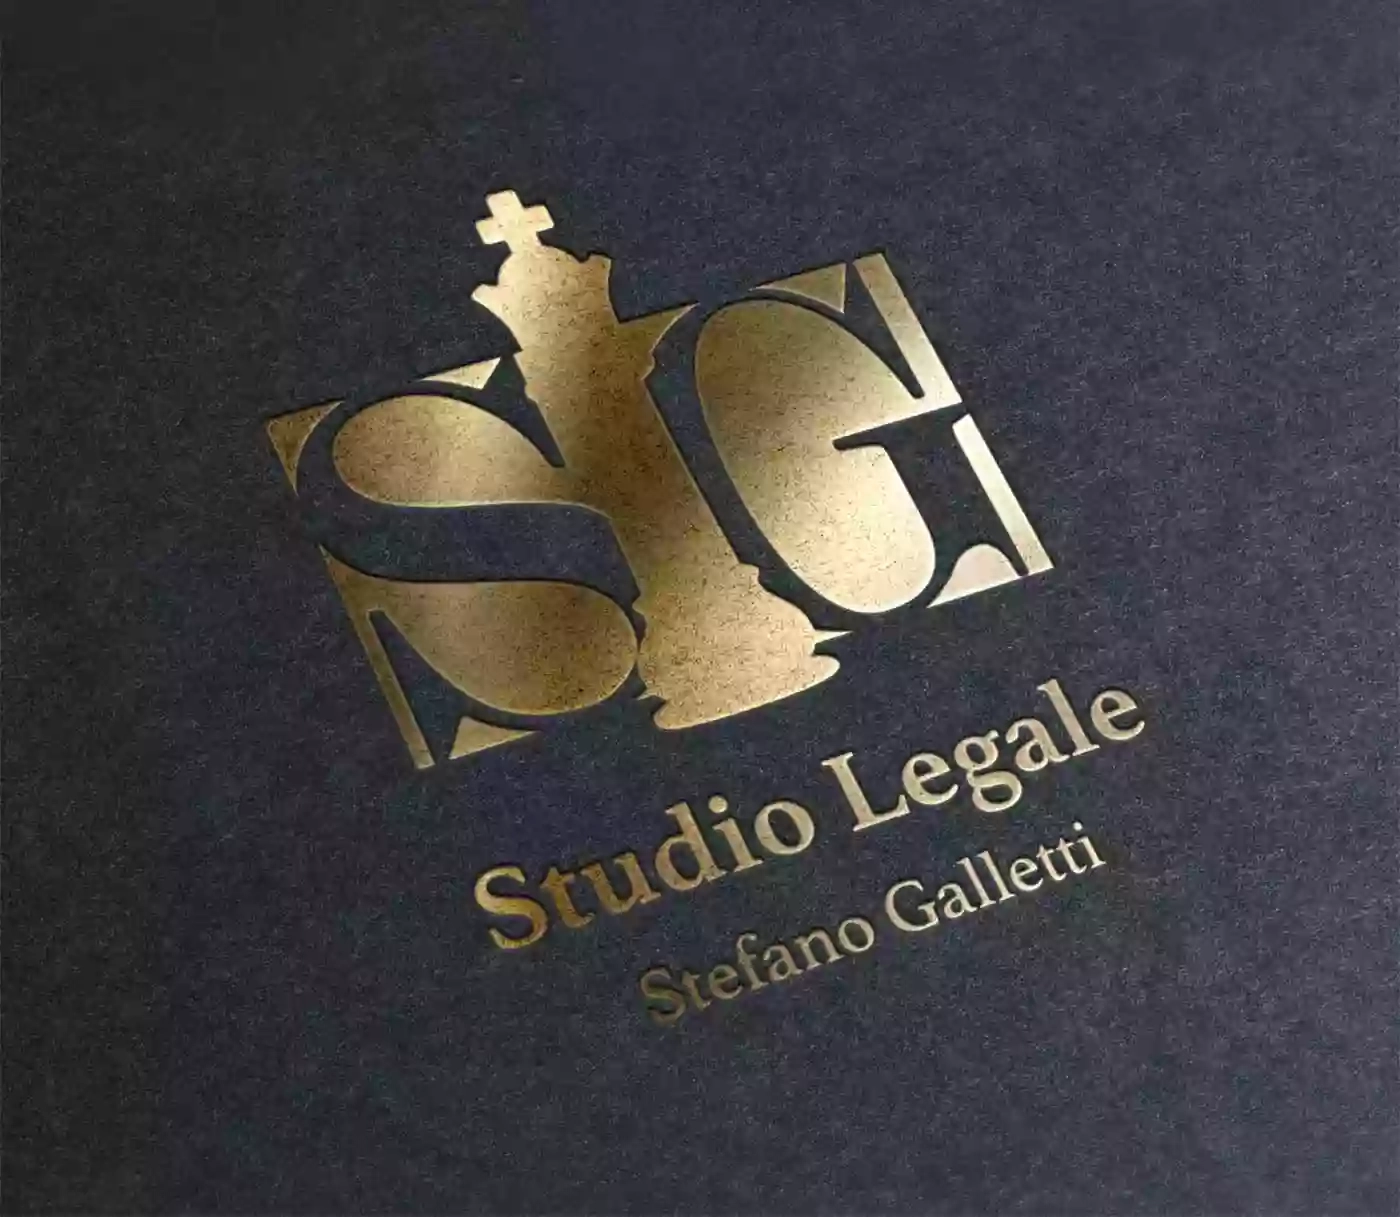 Studio Legale Stefano Galletti